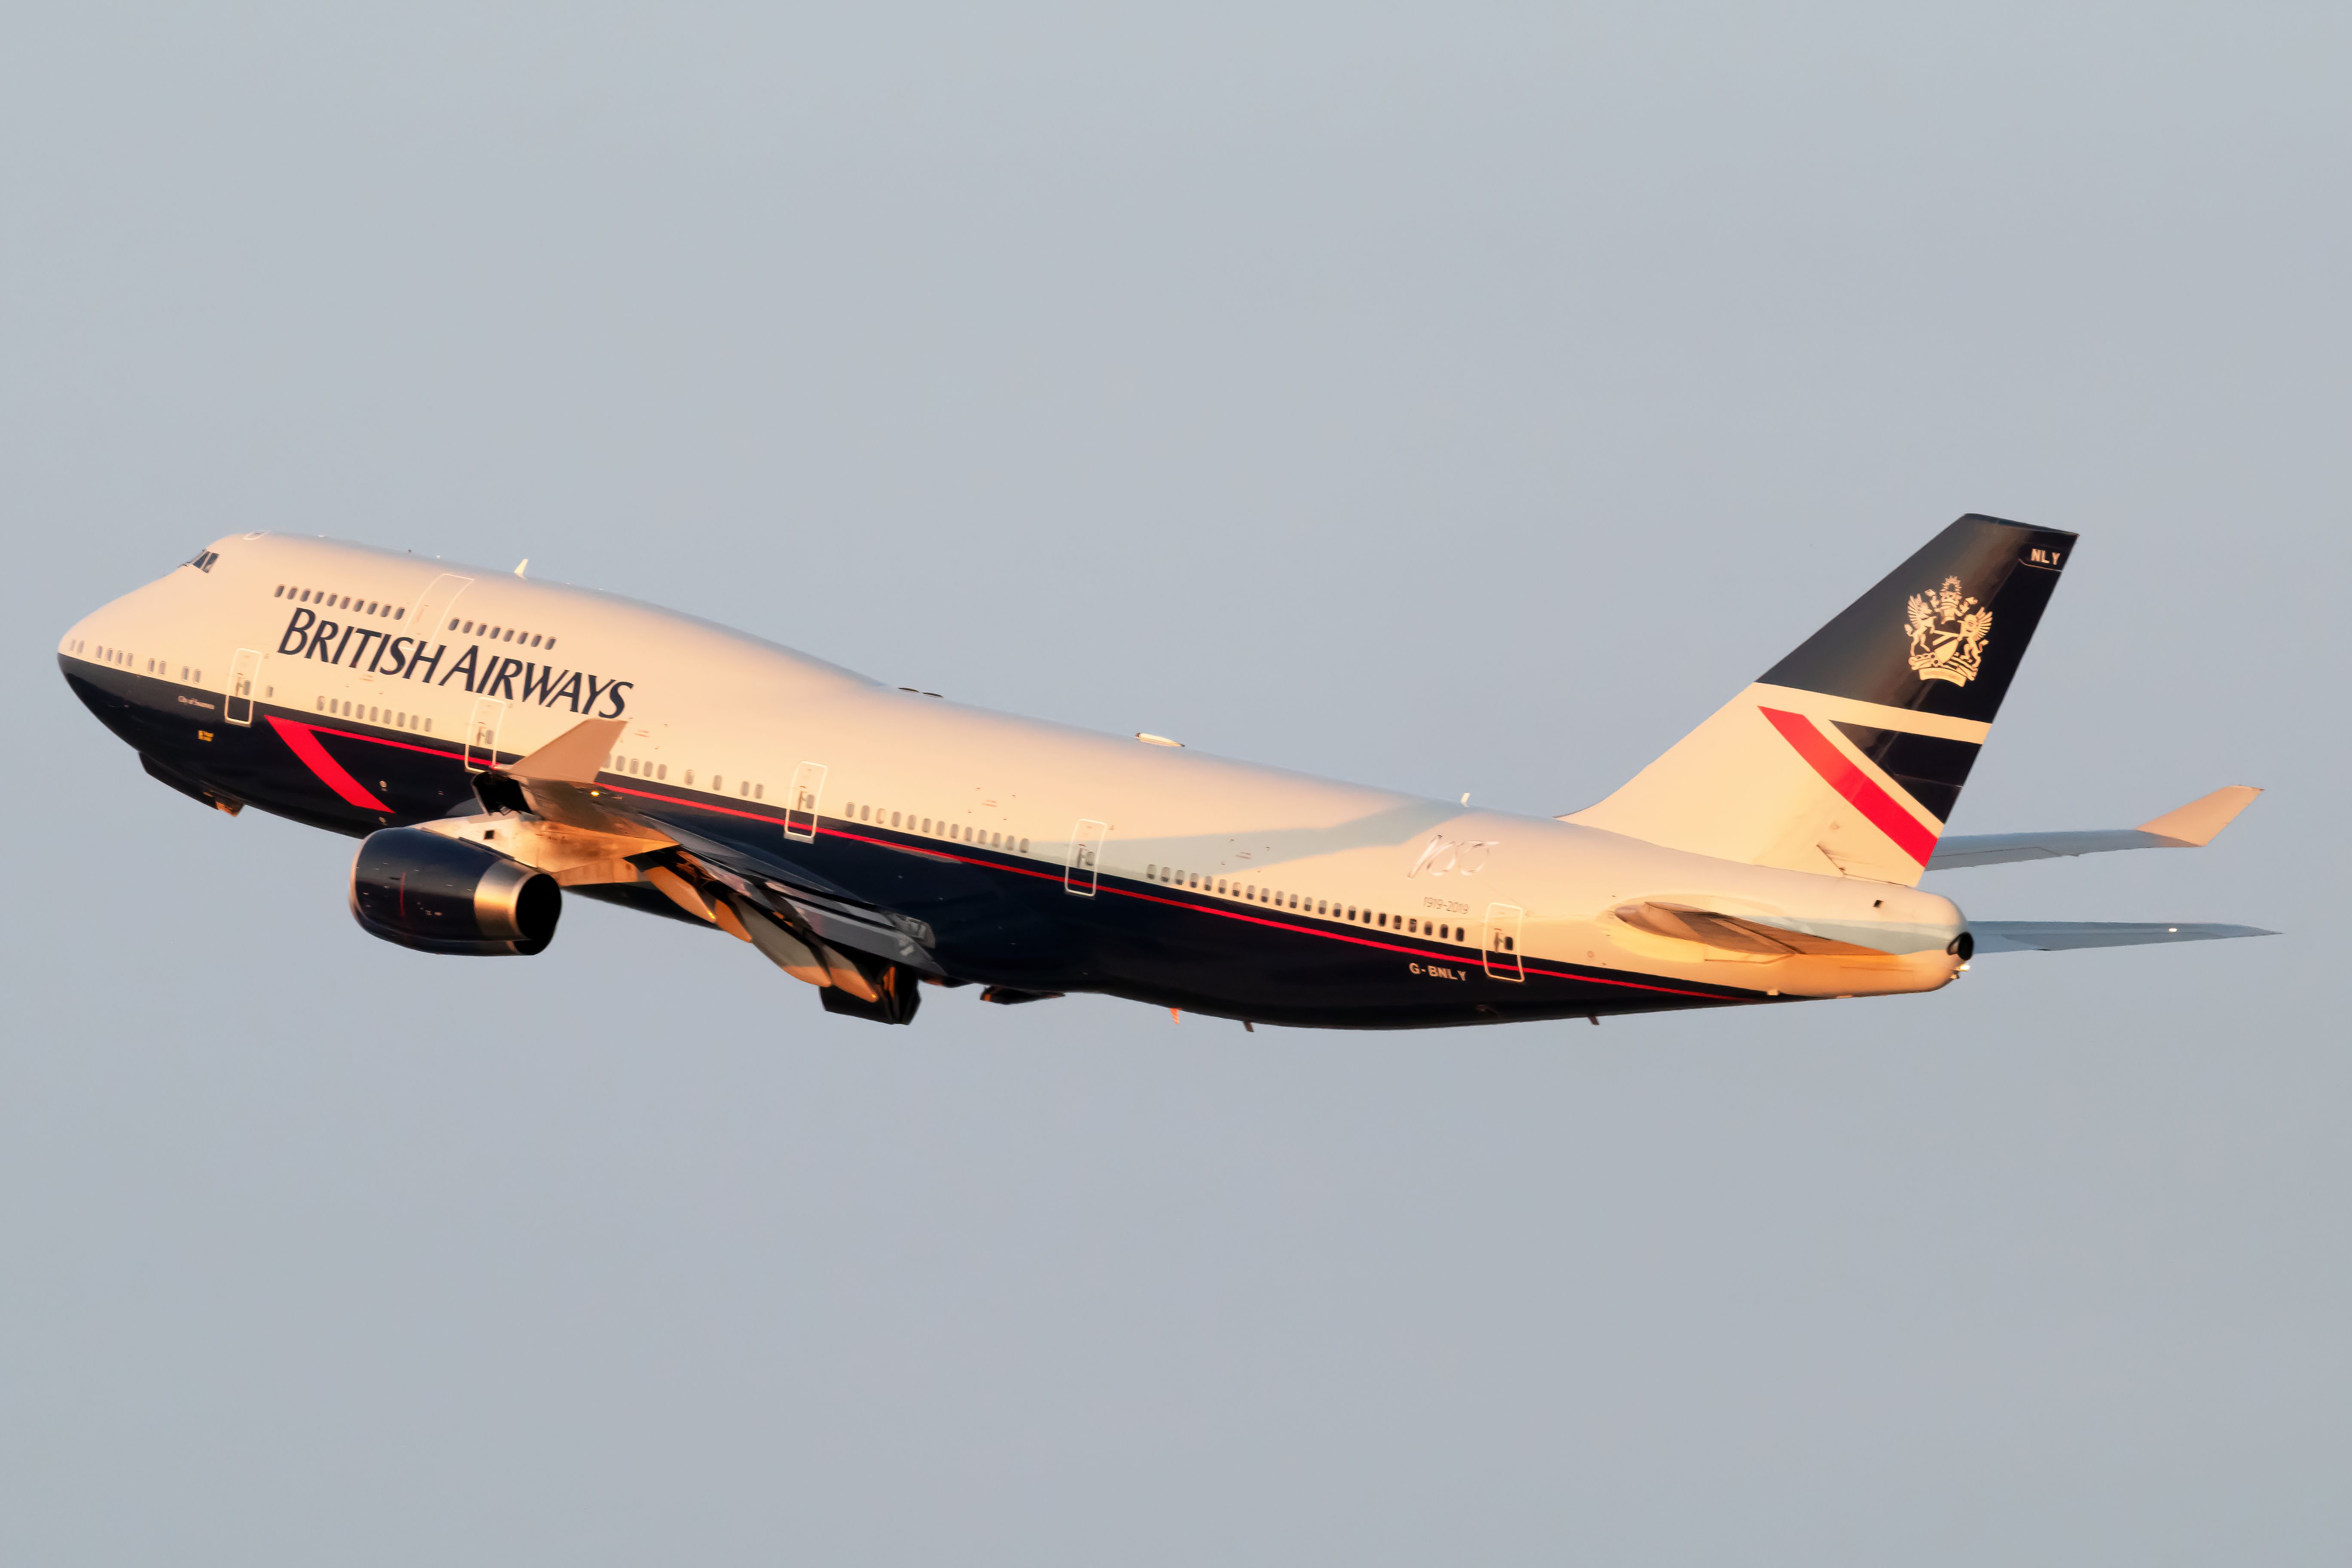 British Airways (Landor Retro Livery) Boeing 747-436 G-BNLY